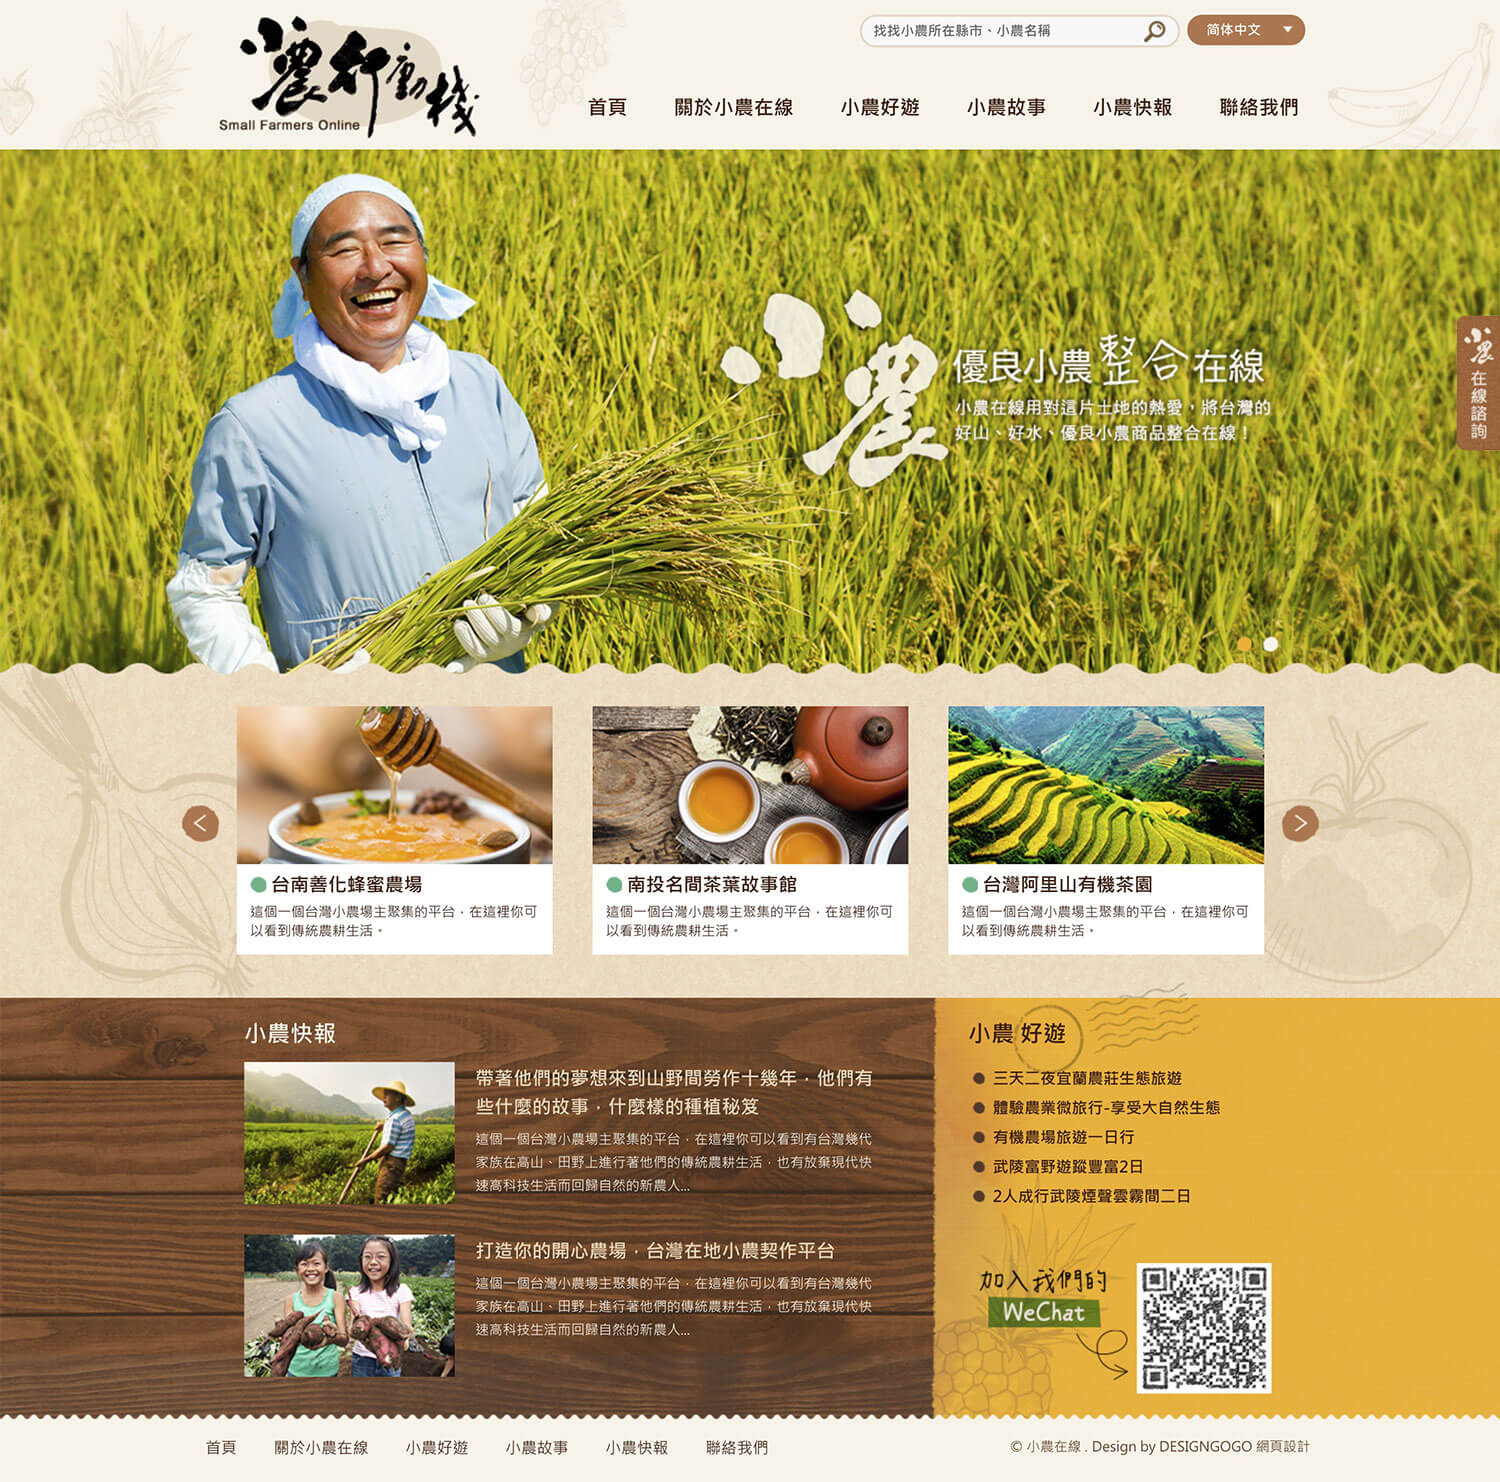 小農在線 網站設計案例 